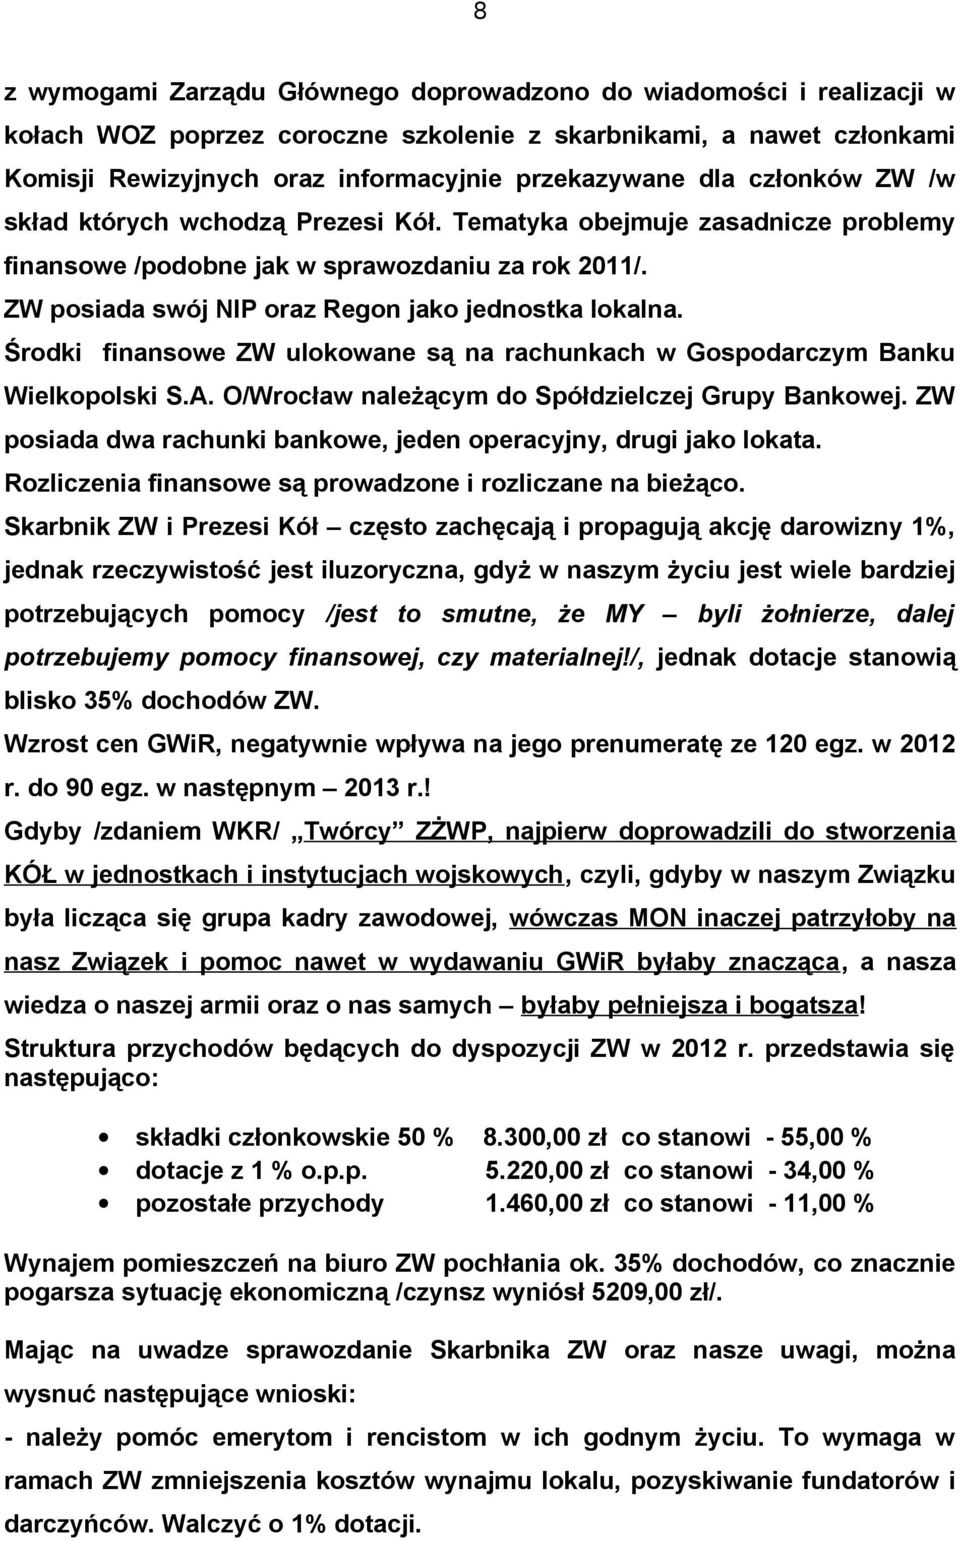 Środki finansowe ZW ulokowane są na rachunkach w Gospodarczym Banku Wielkopolski S.A. O/Wrocław należącym do Spółdzielczej Grupy Bankowej.